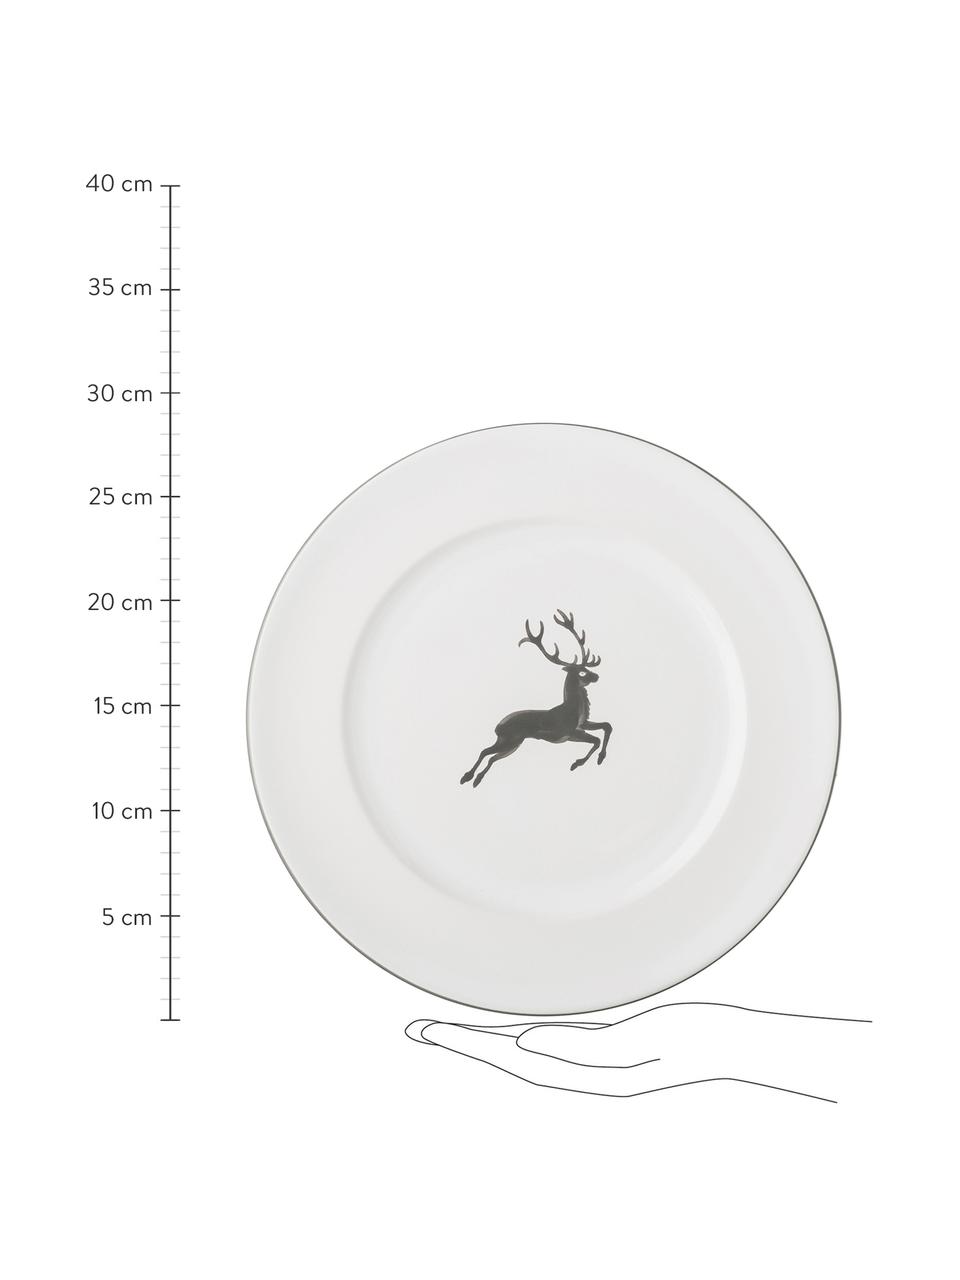 Assiette plate céramique artisanale Cerf Gris Gourmet, Céramique, Gris, blanc, Ø 27 cm